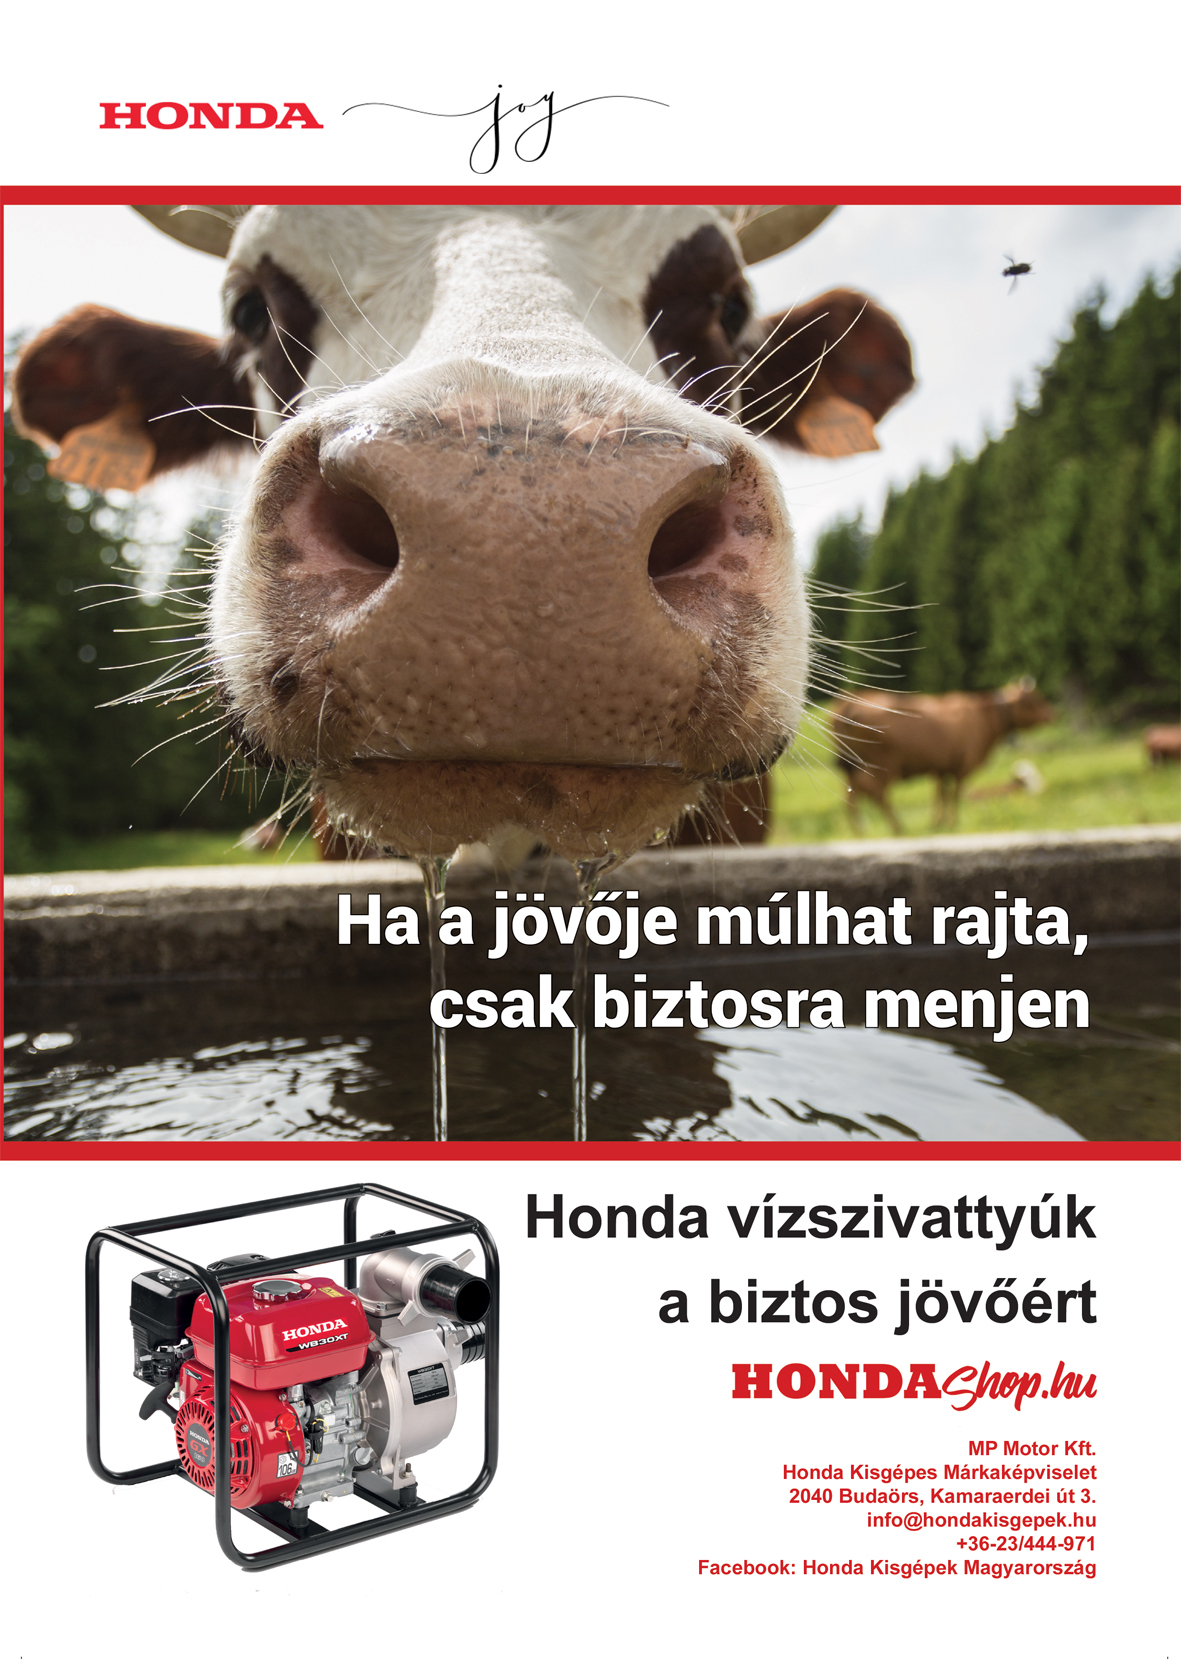 Honda Kisgépek Magyarország